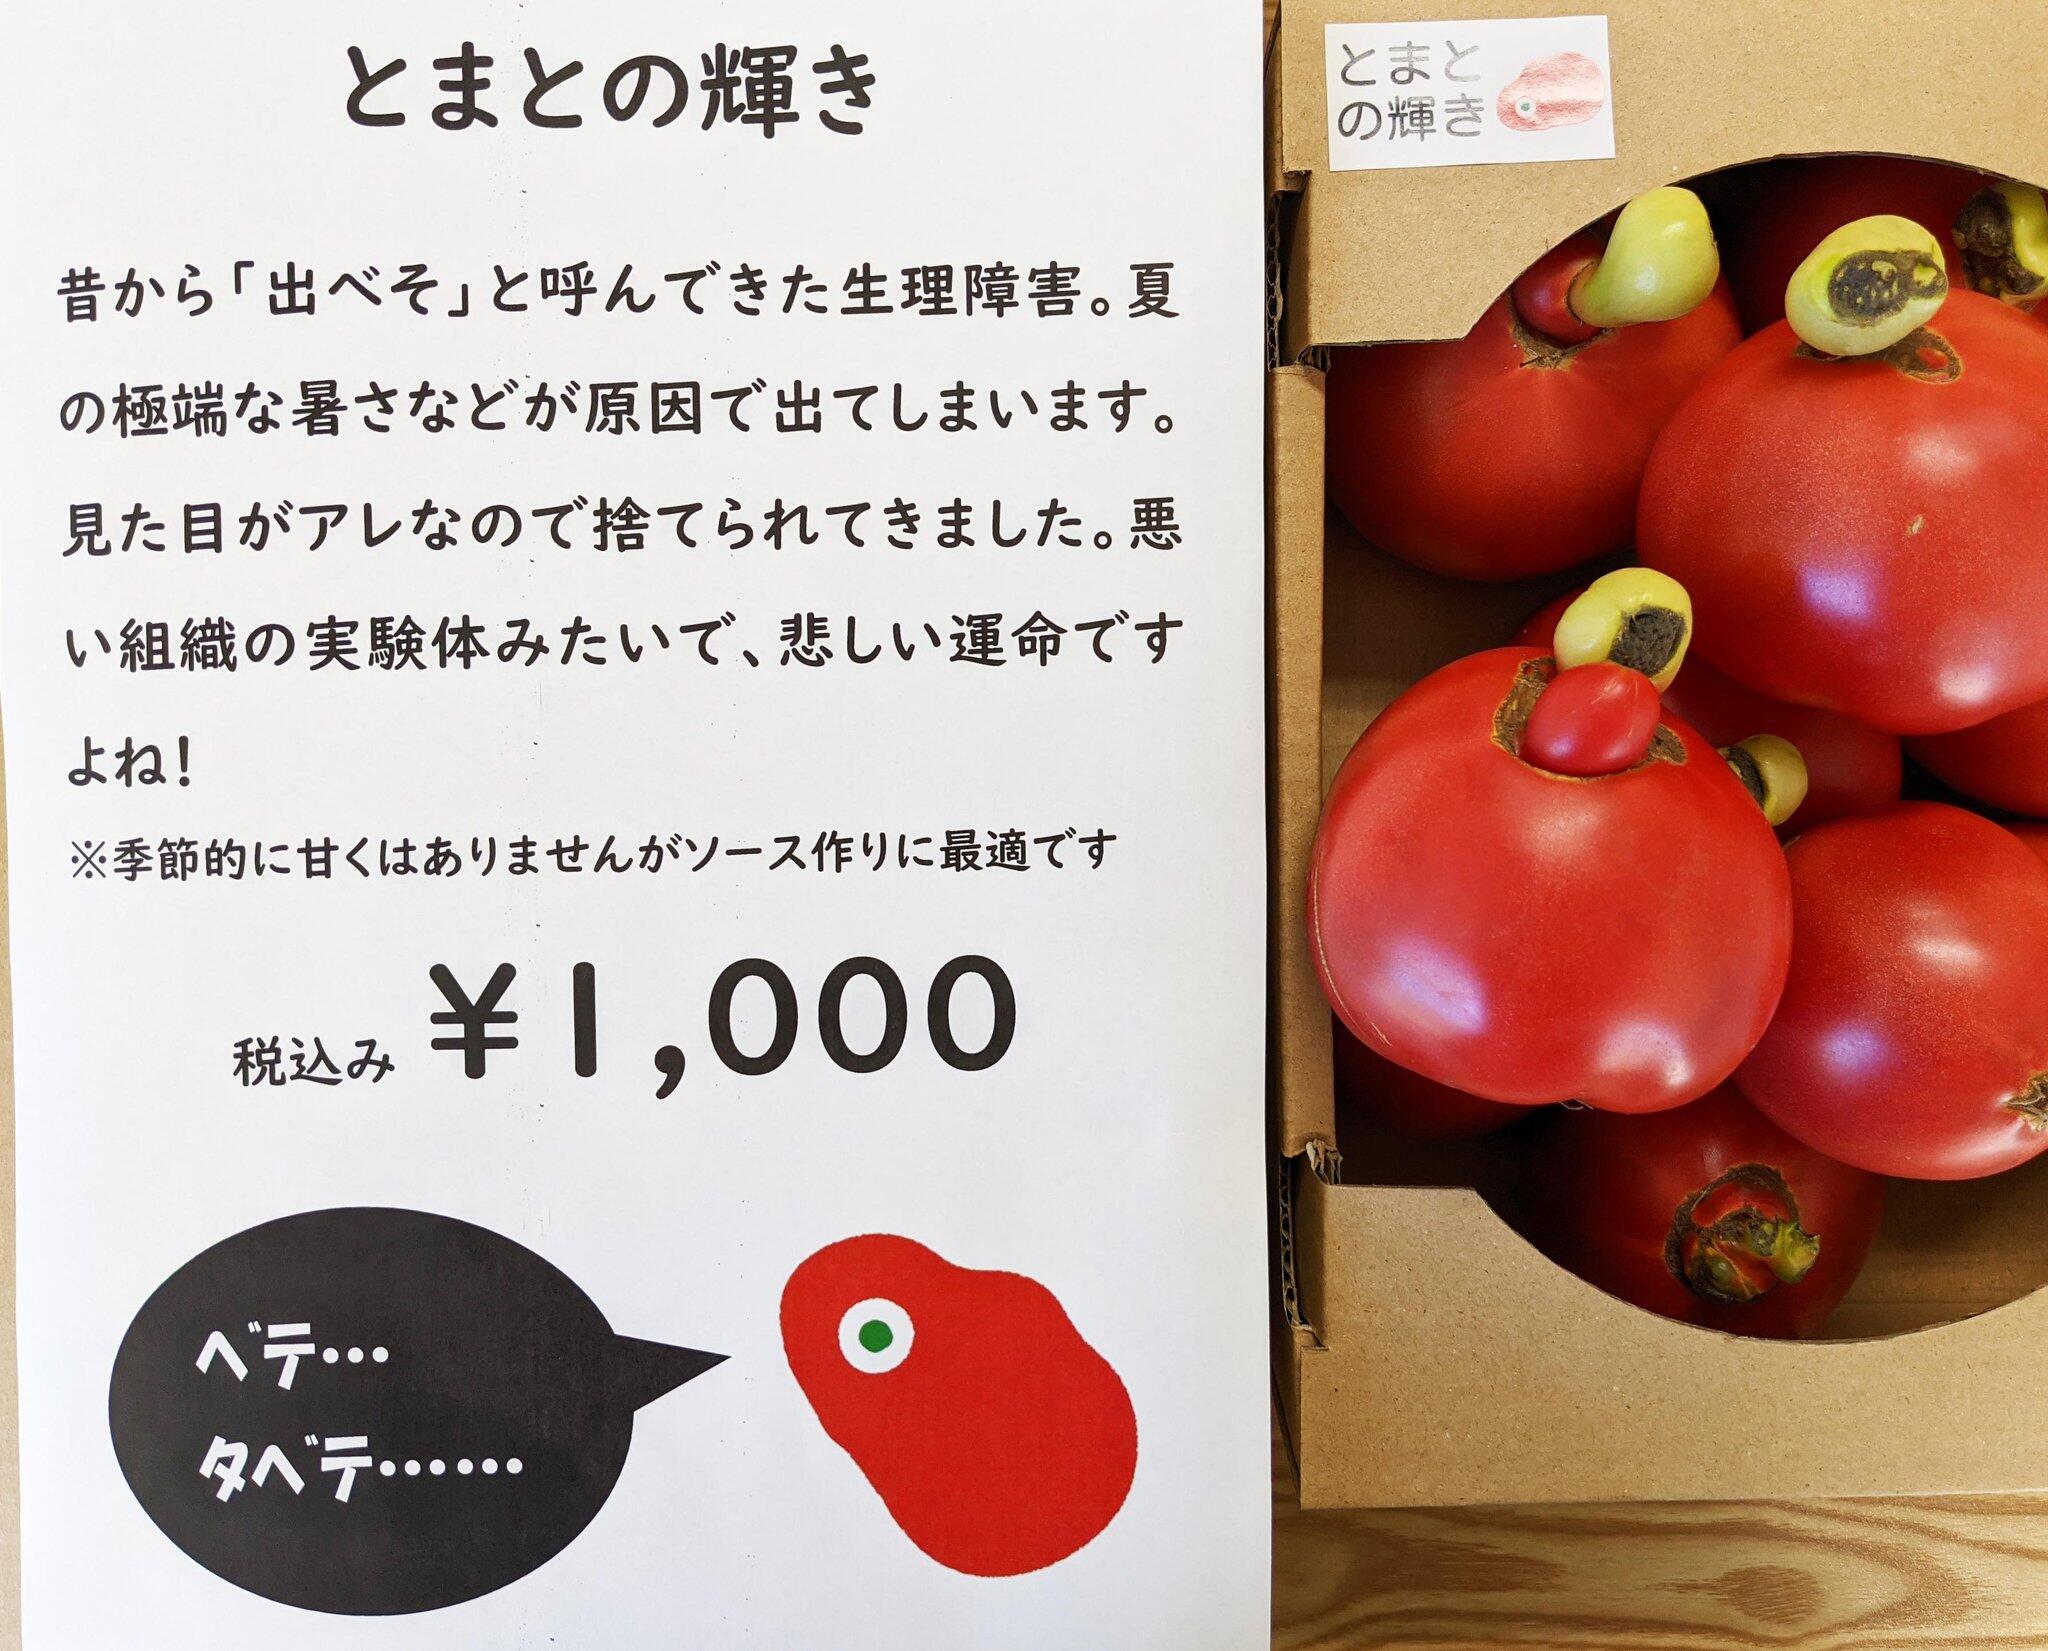 規格外で捨てられるトマトが 奇抜ネーミングで話題商品に 農家のアイデアに反響 J Cast ニュース 全文表示